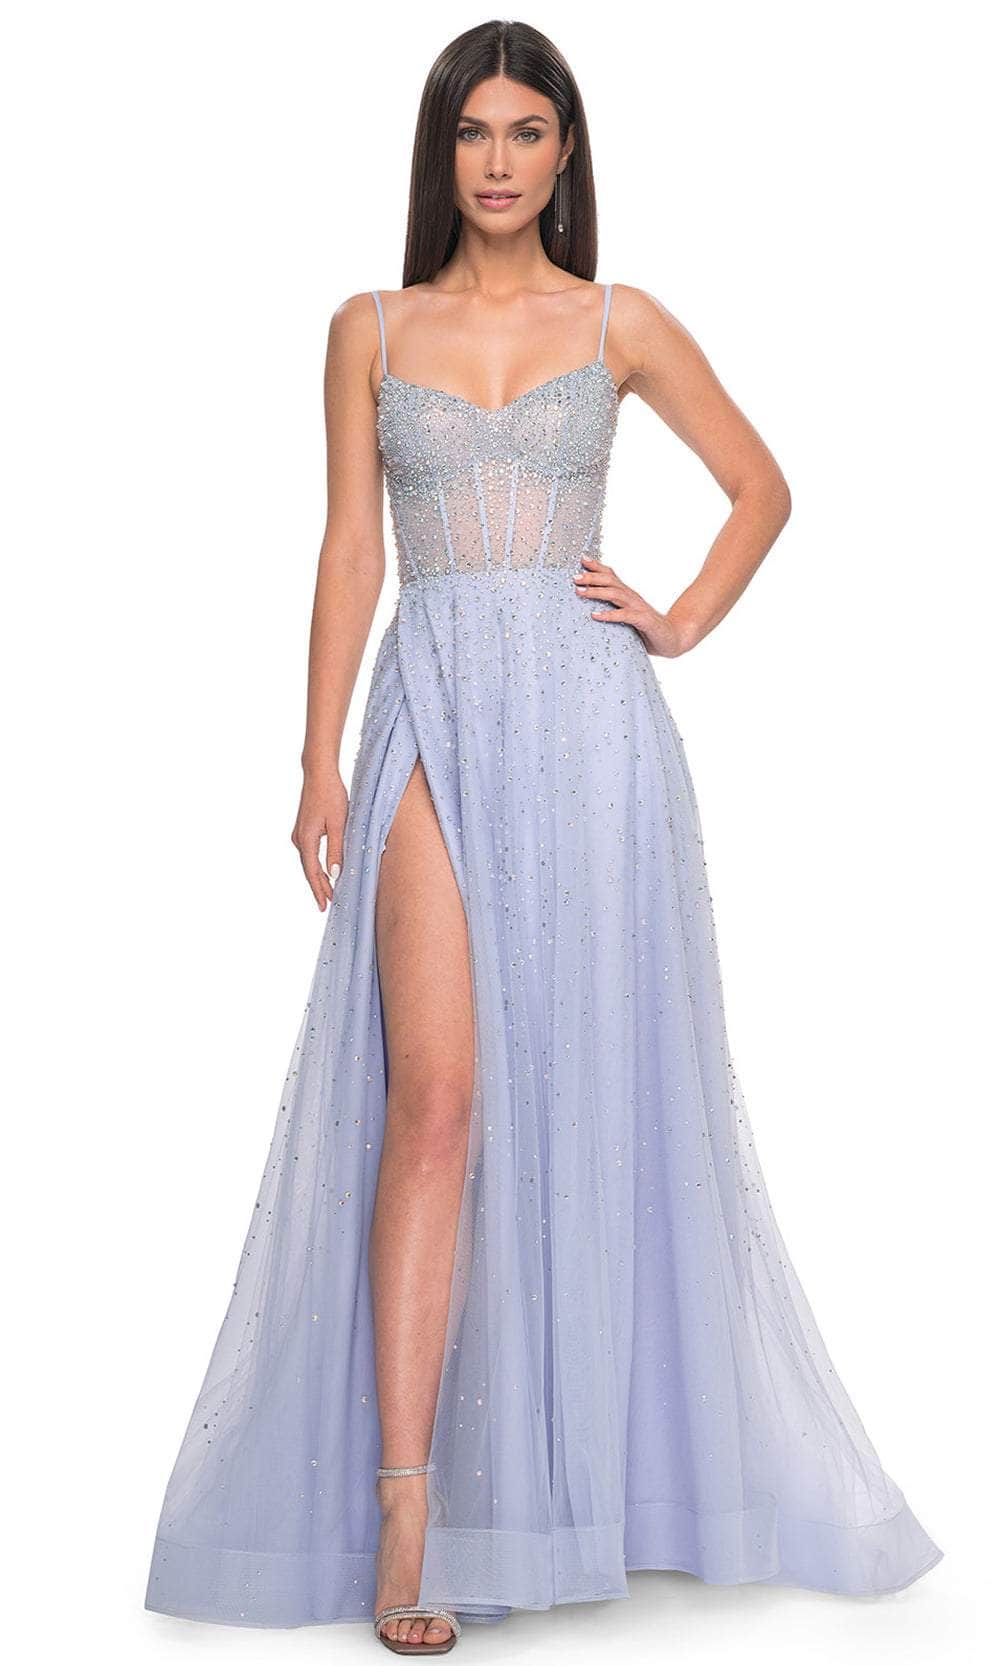 Image of La Femme 32146 - Embellished A-Line Prom Dress